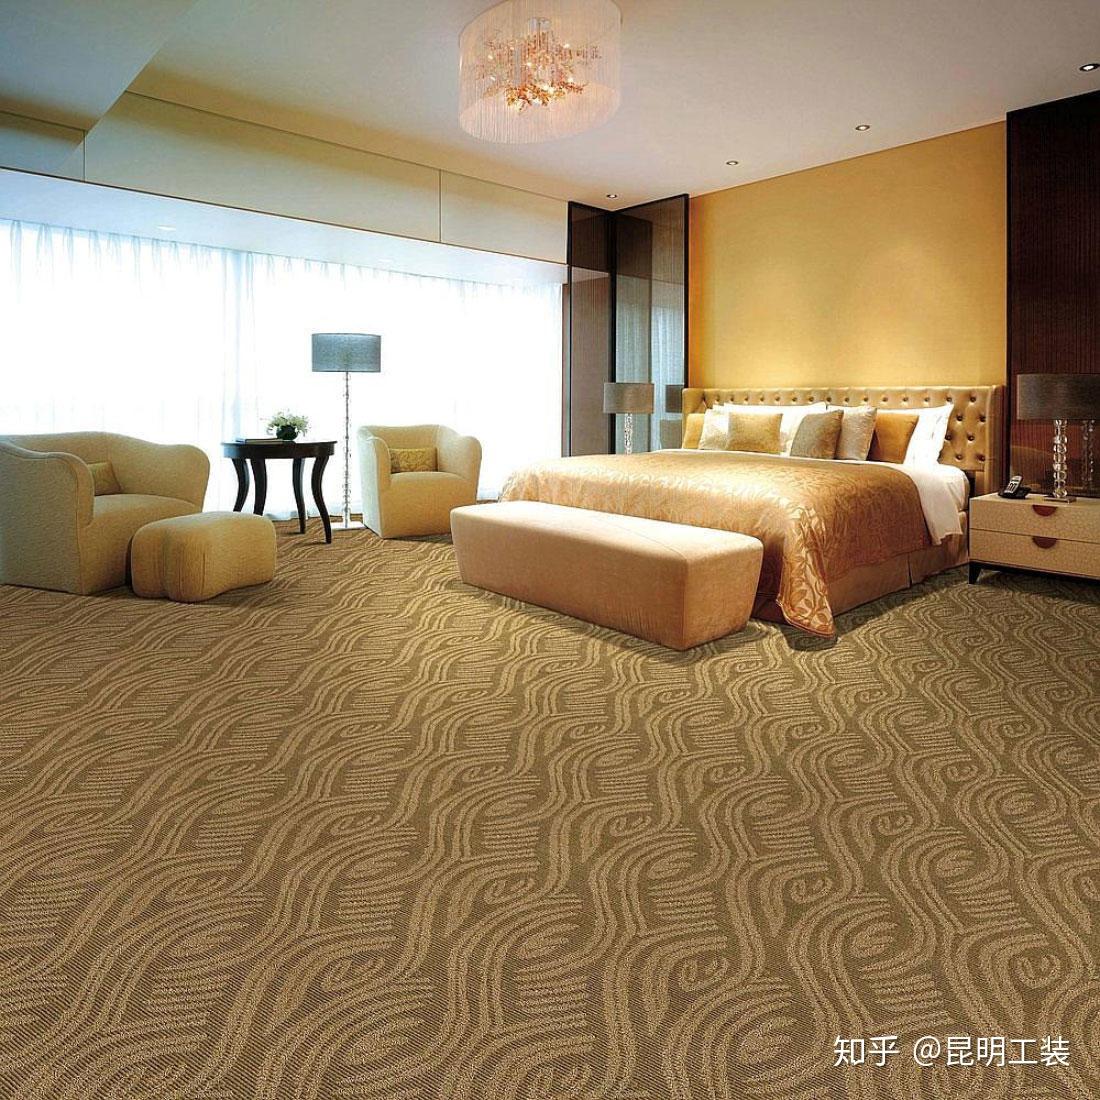 毯者 现代新品高端现代简约北欧风客厅沙发大面积地毯_设计素材库免费下载-美间设计